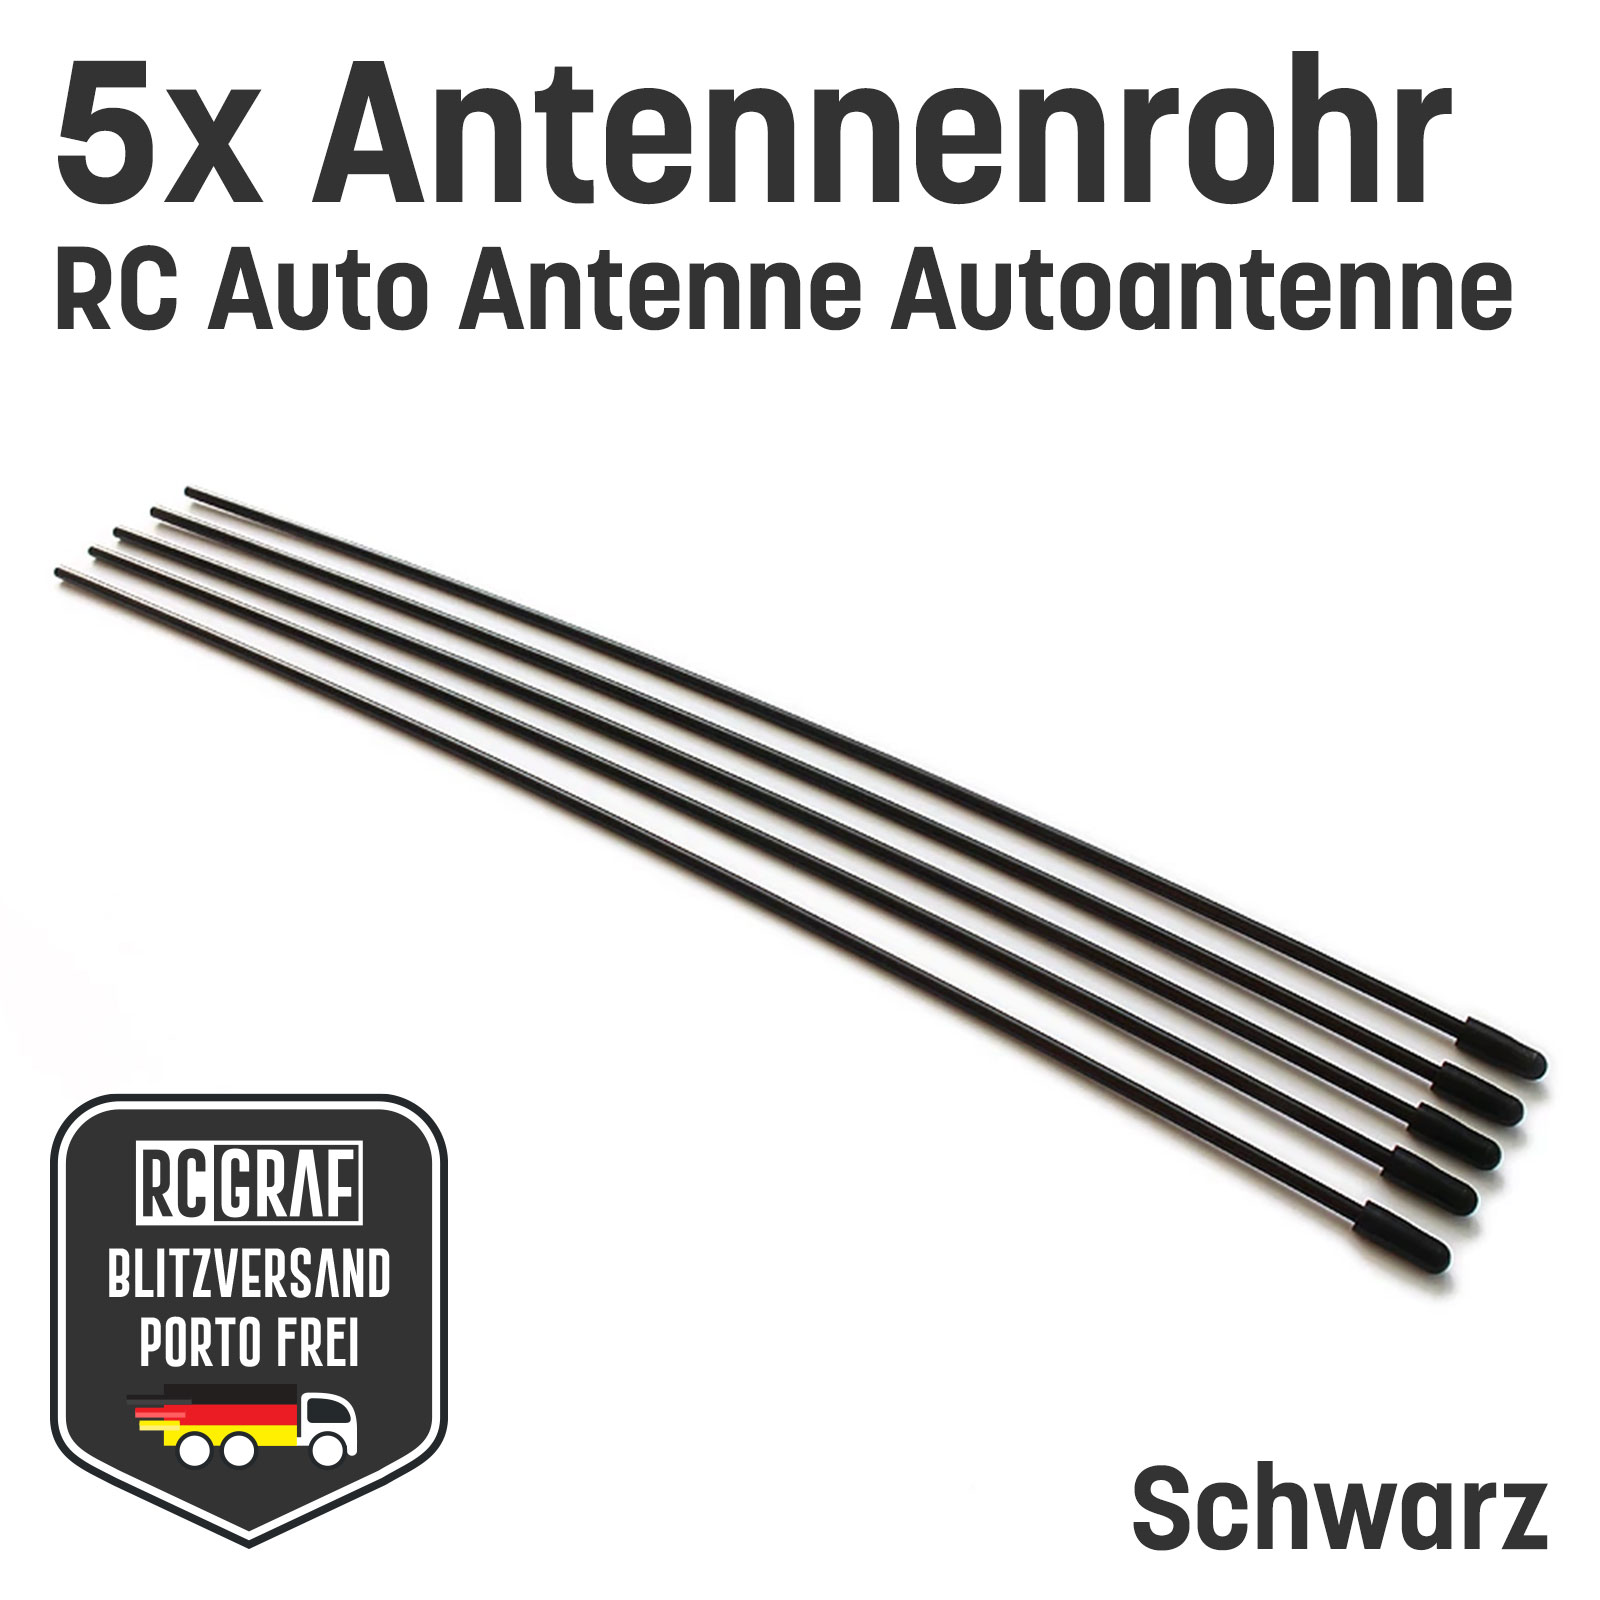 5x RC Antennenrohr Schwarz